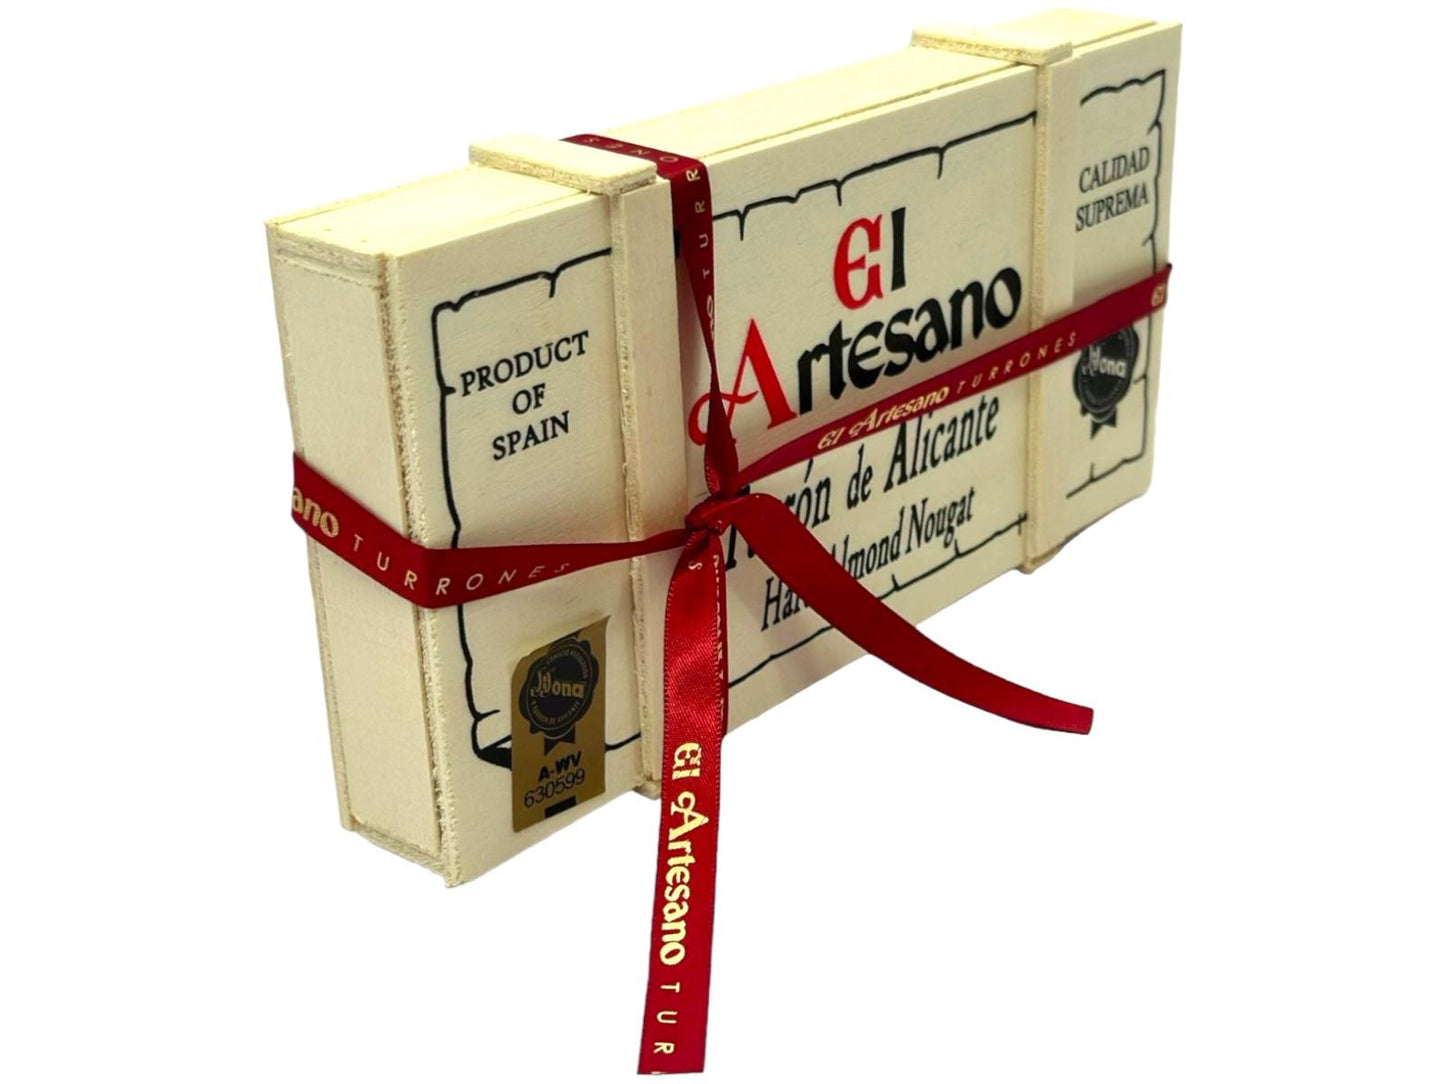 El Artesano Spanish Hard Almond Nougat in Wooden Gift Box Turron de Alicante 200g